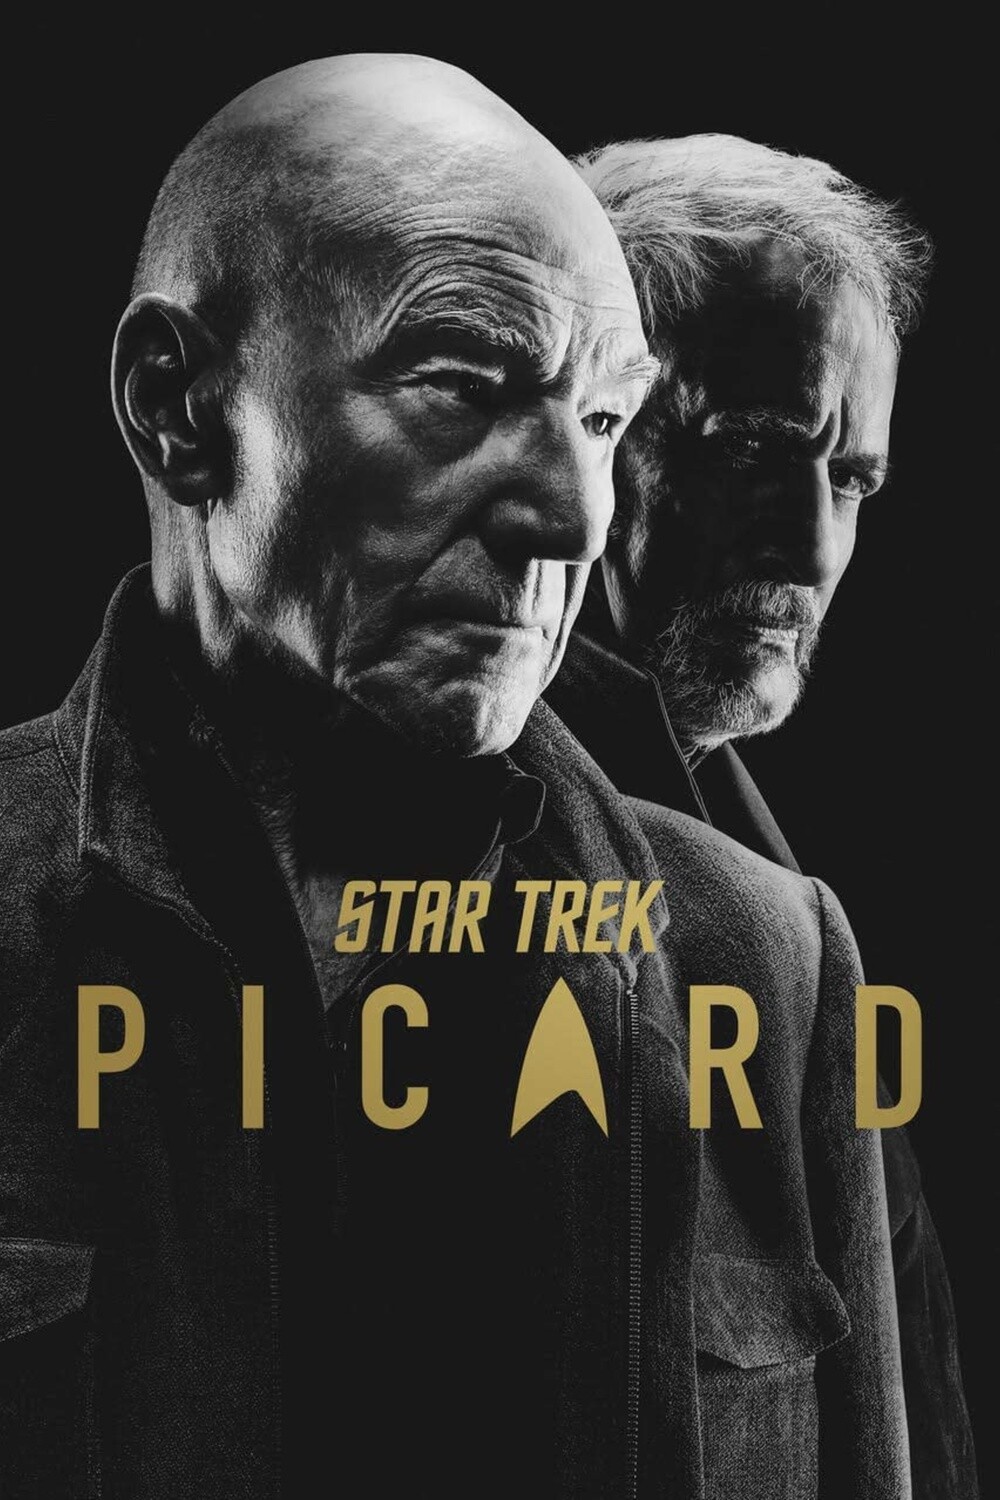 Star Trek Picard Season Two (7 day Dvd rental)